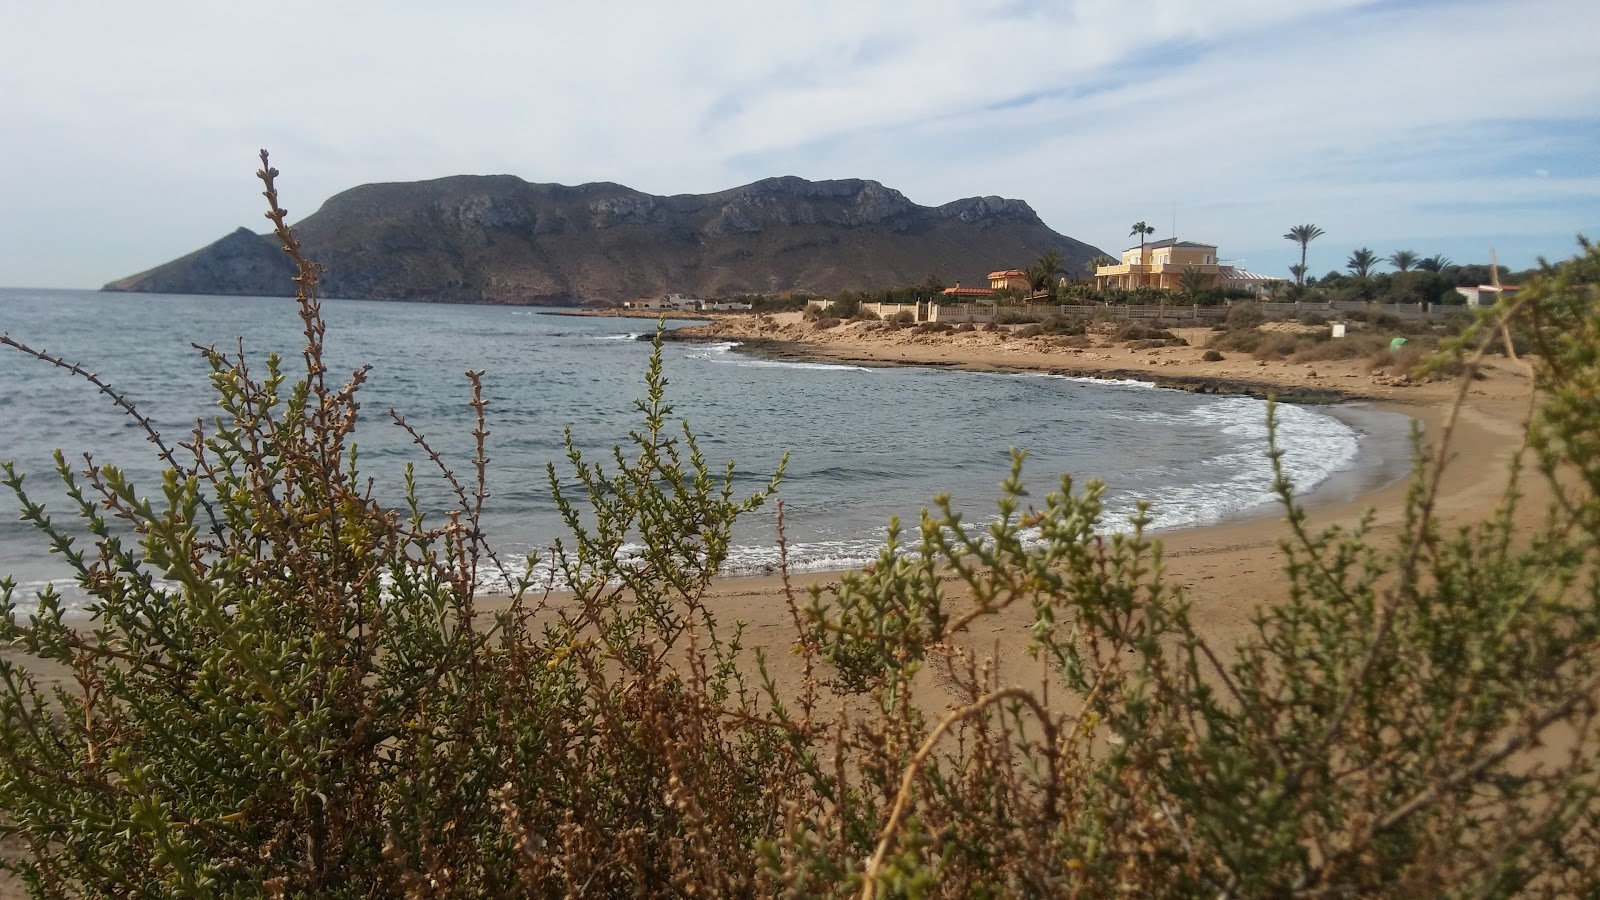 Playa del Charco'in fotoğrafı kahverengi kum yüzey ile